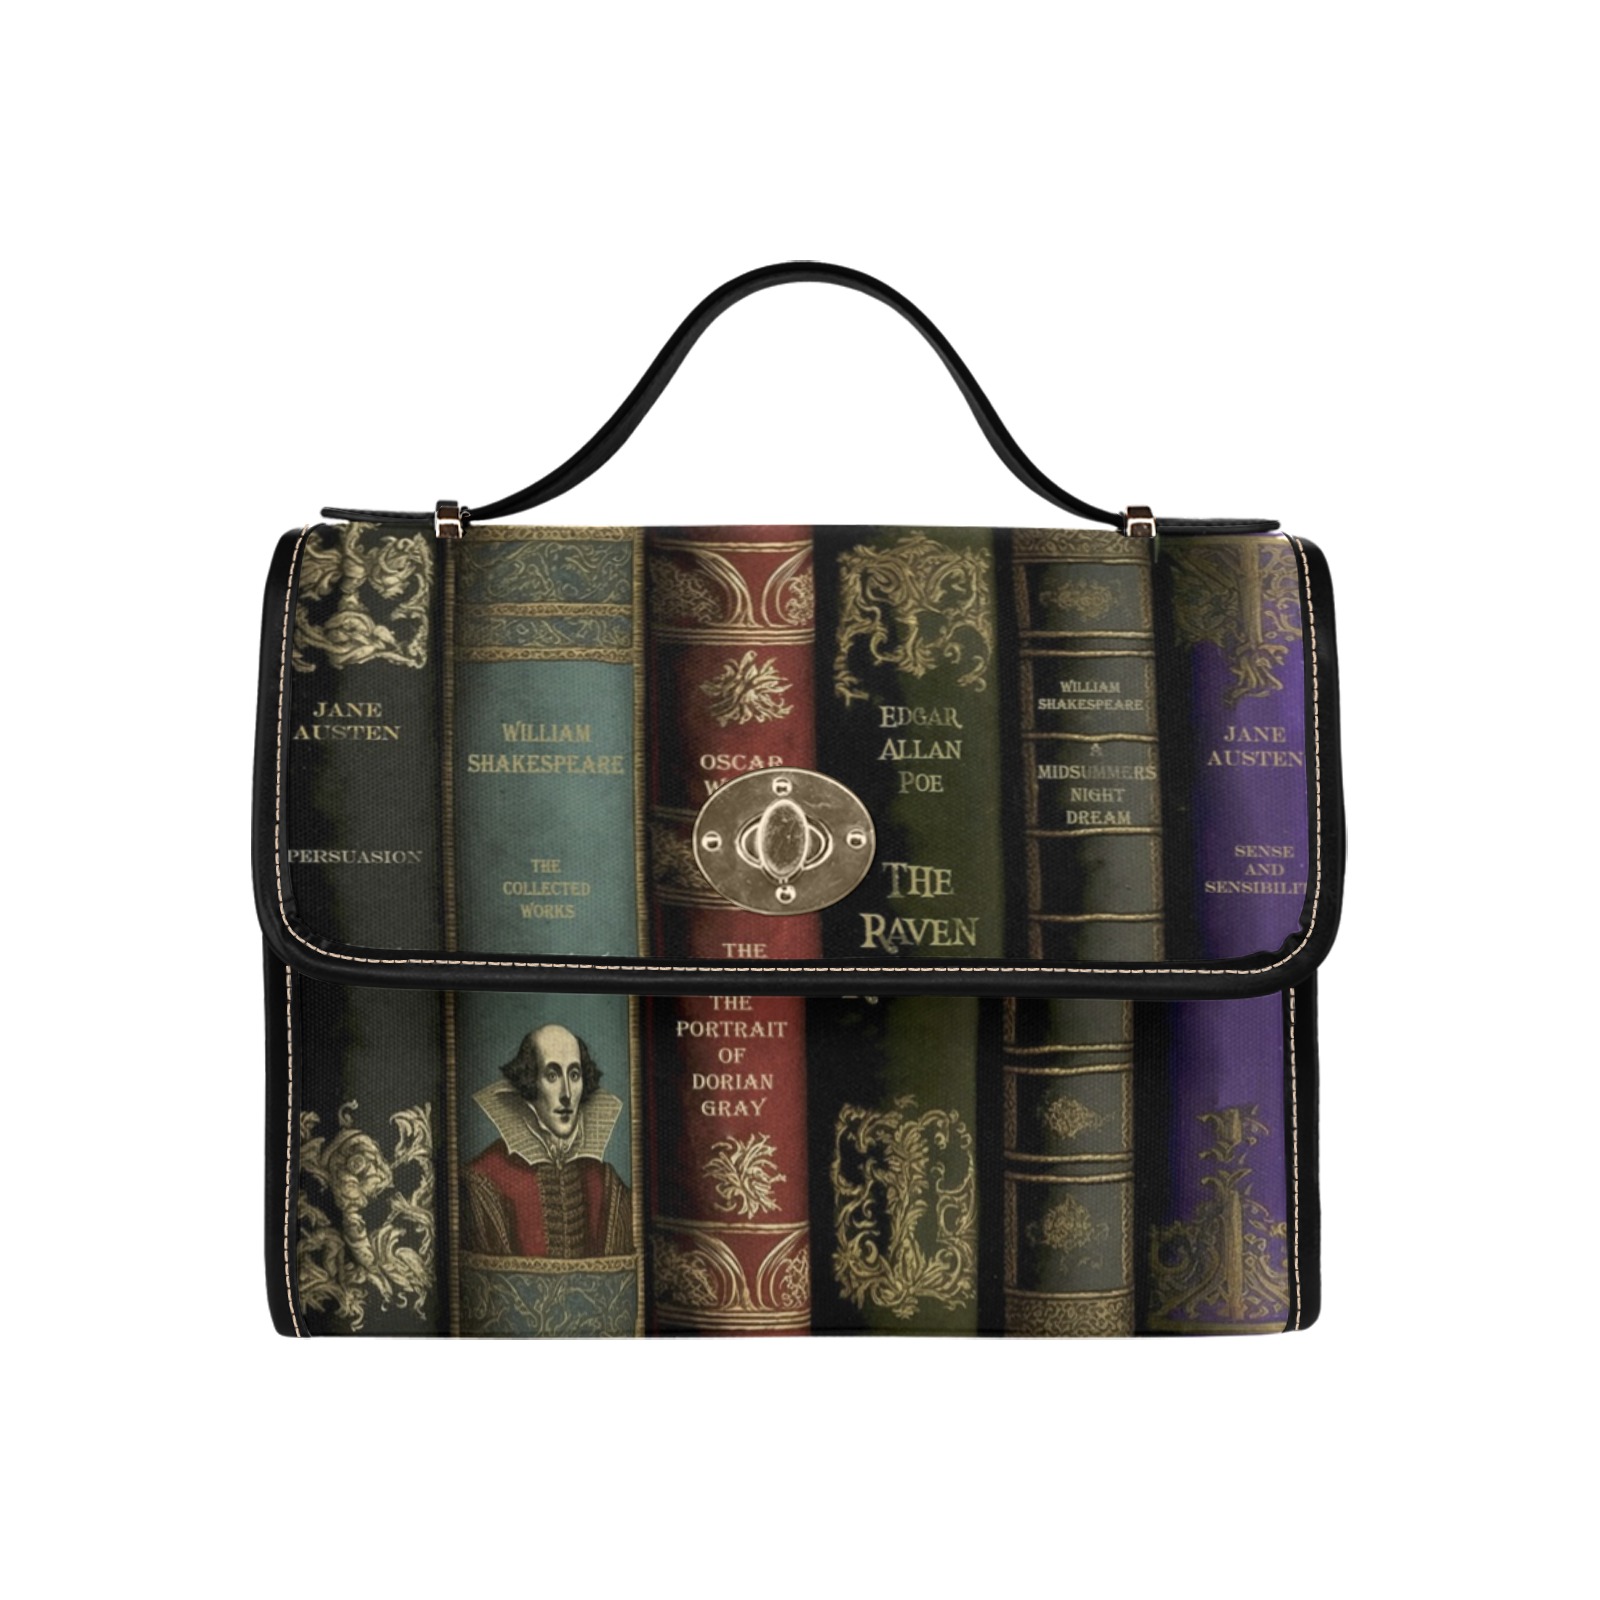 Vintage Library Books Satchel Shoulder Bag (ABOOKSS) Waterproof Canvas Bag-Black (All Over Print) (Model 1641)